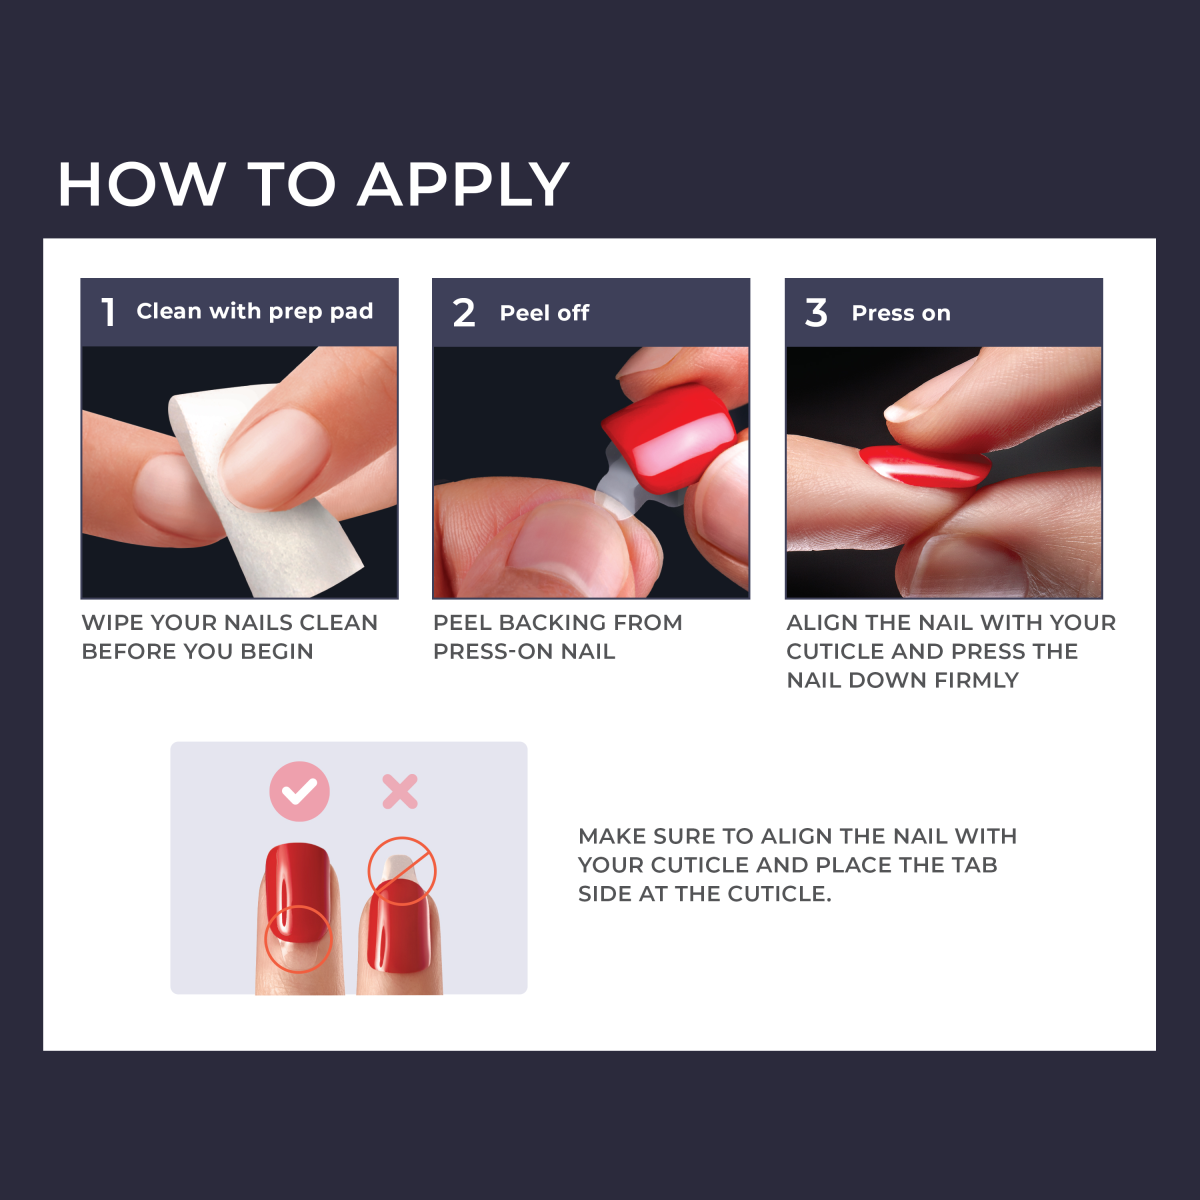 imPRESS Press-On Manicure - Lucky Day